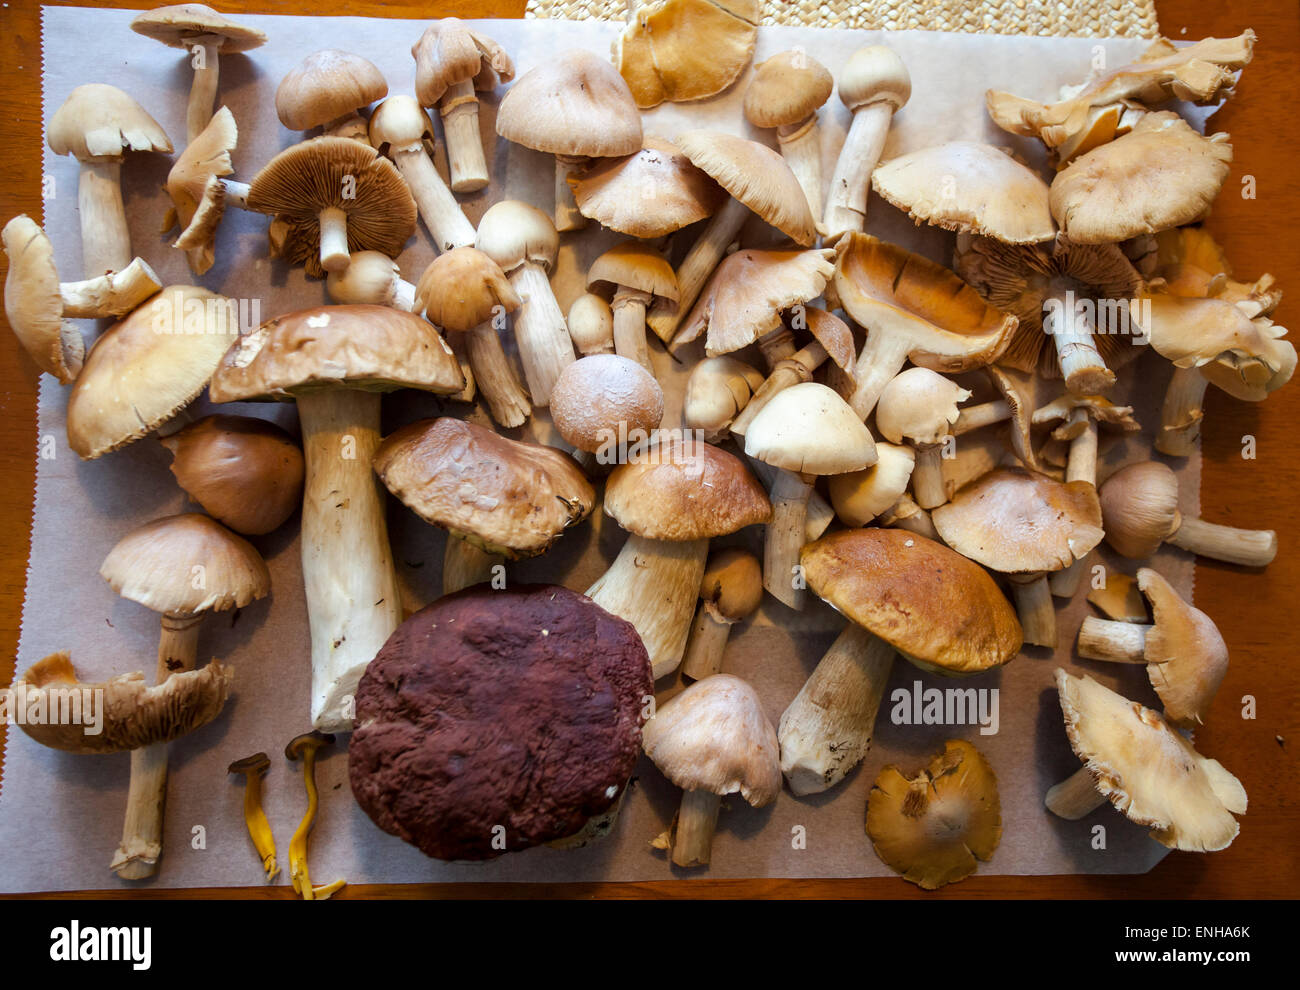 Autumn mushrooms Stock Photo